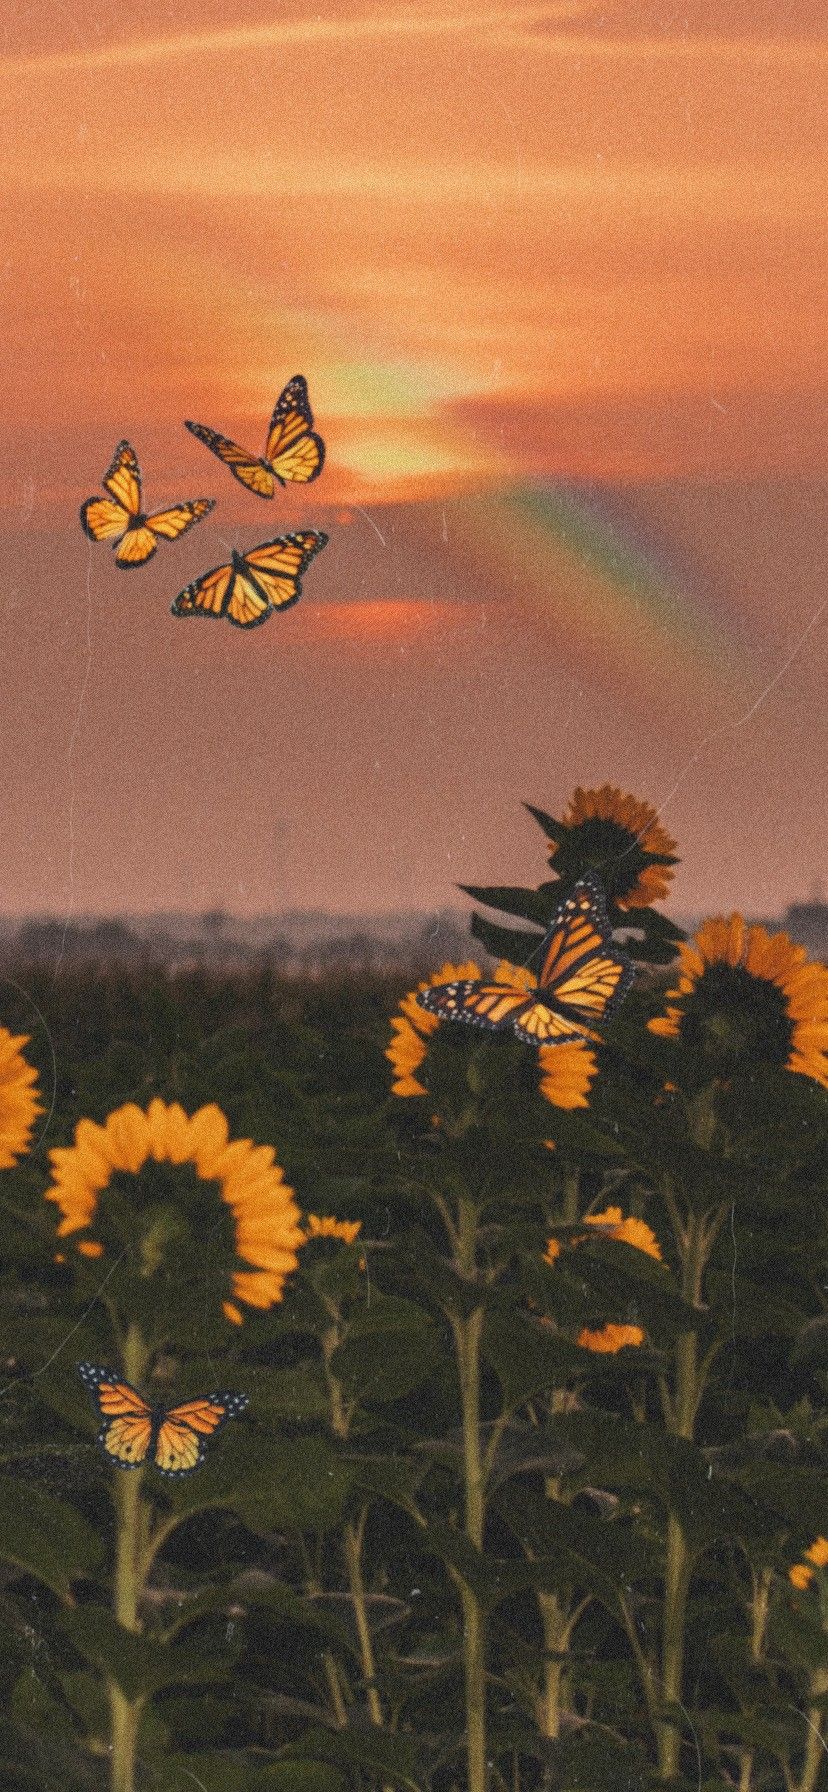 Wallpaper Sunflowers And Butterflies Wallpapers